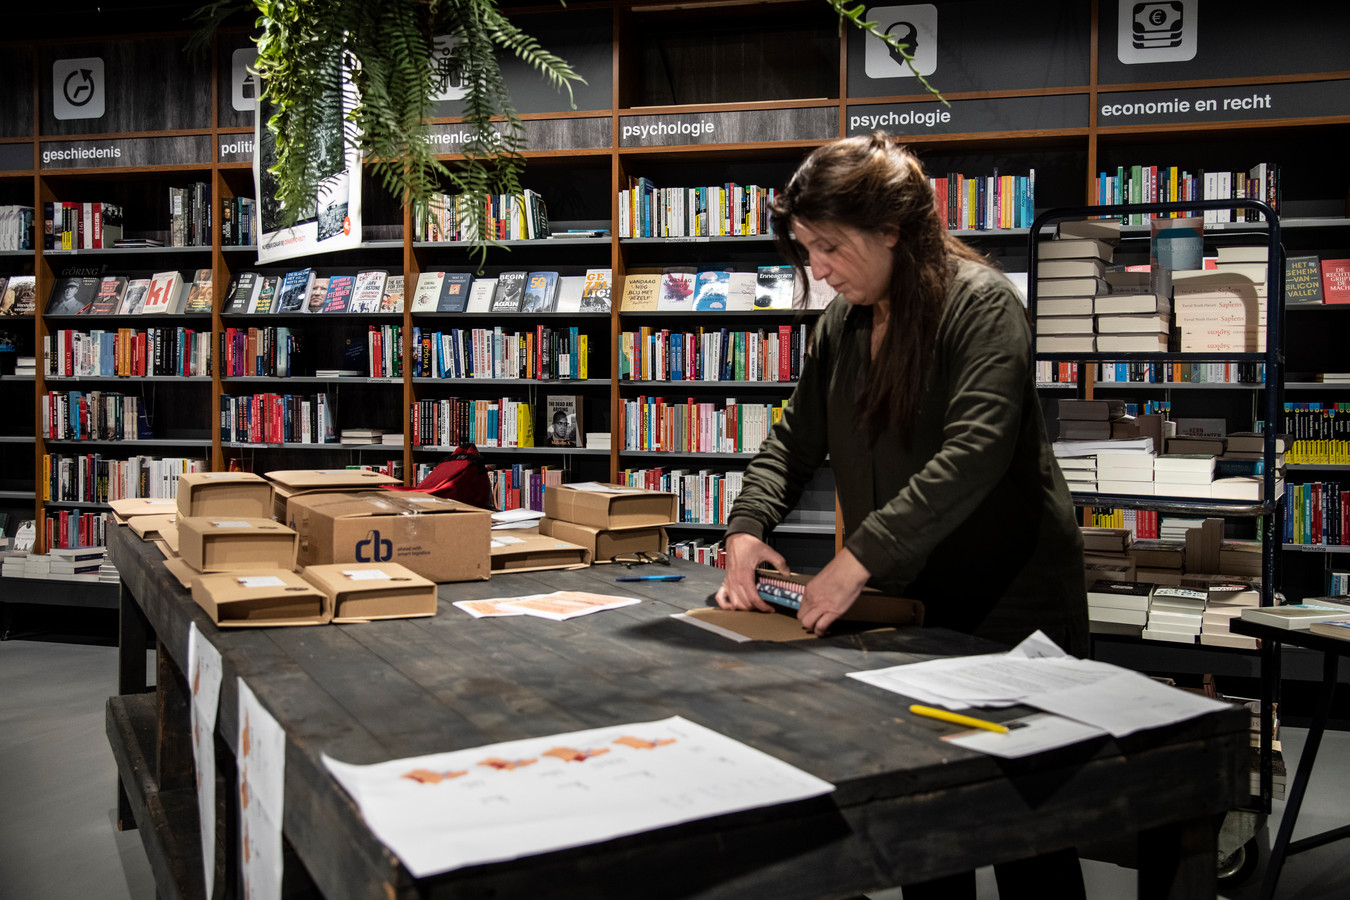 Voorschrift Offer Rimpels Bekende schrijvers: 'Koop boeken en bestel ze bij je eigen boekhandel' |  Foto | gelderlander.nl